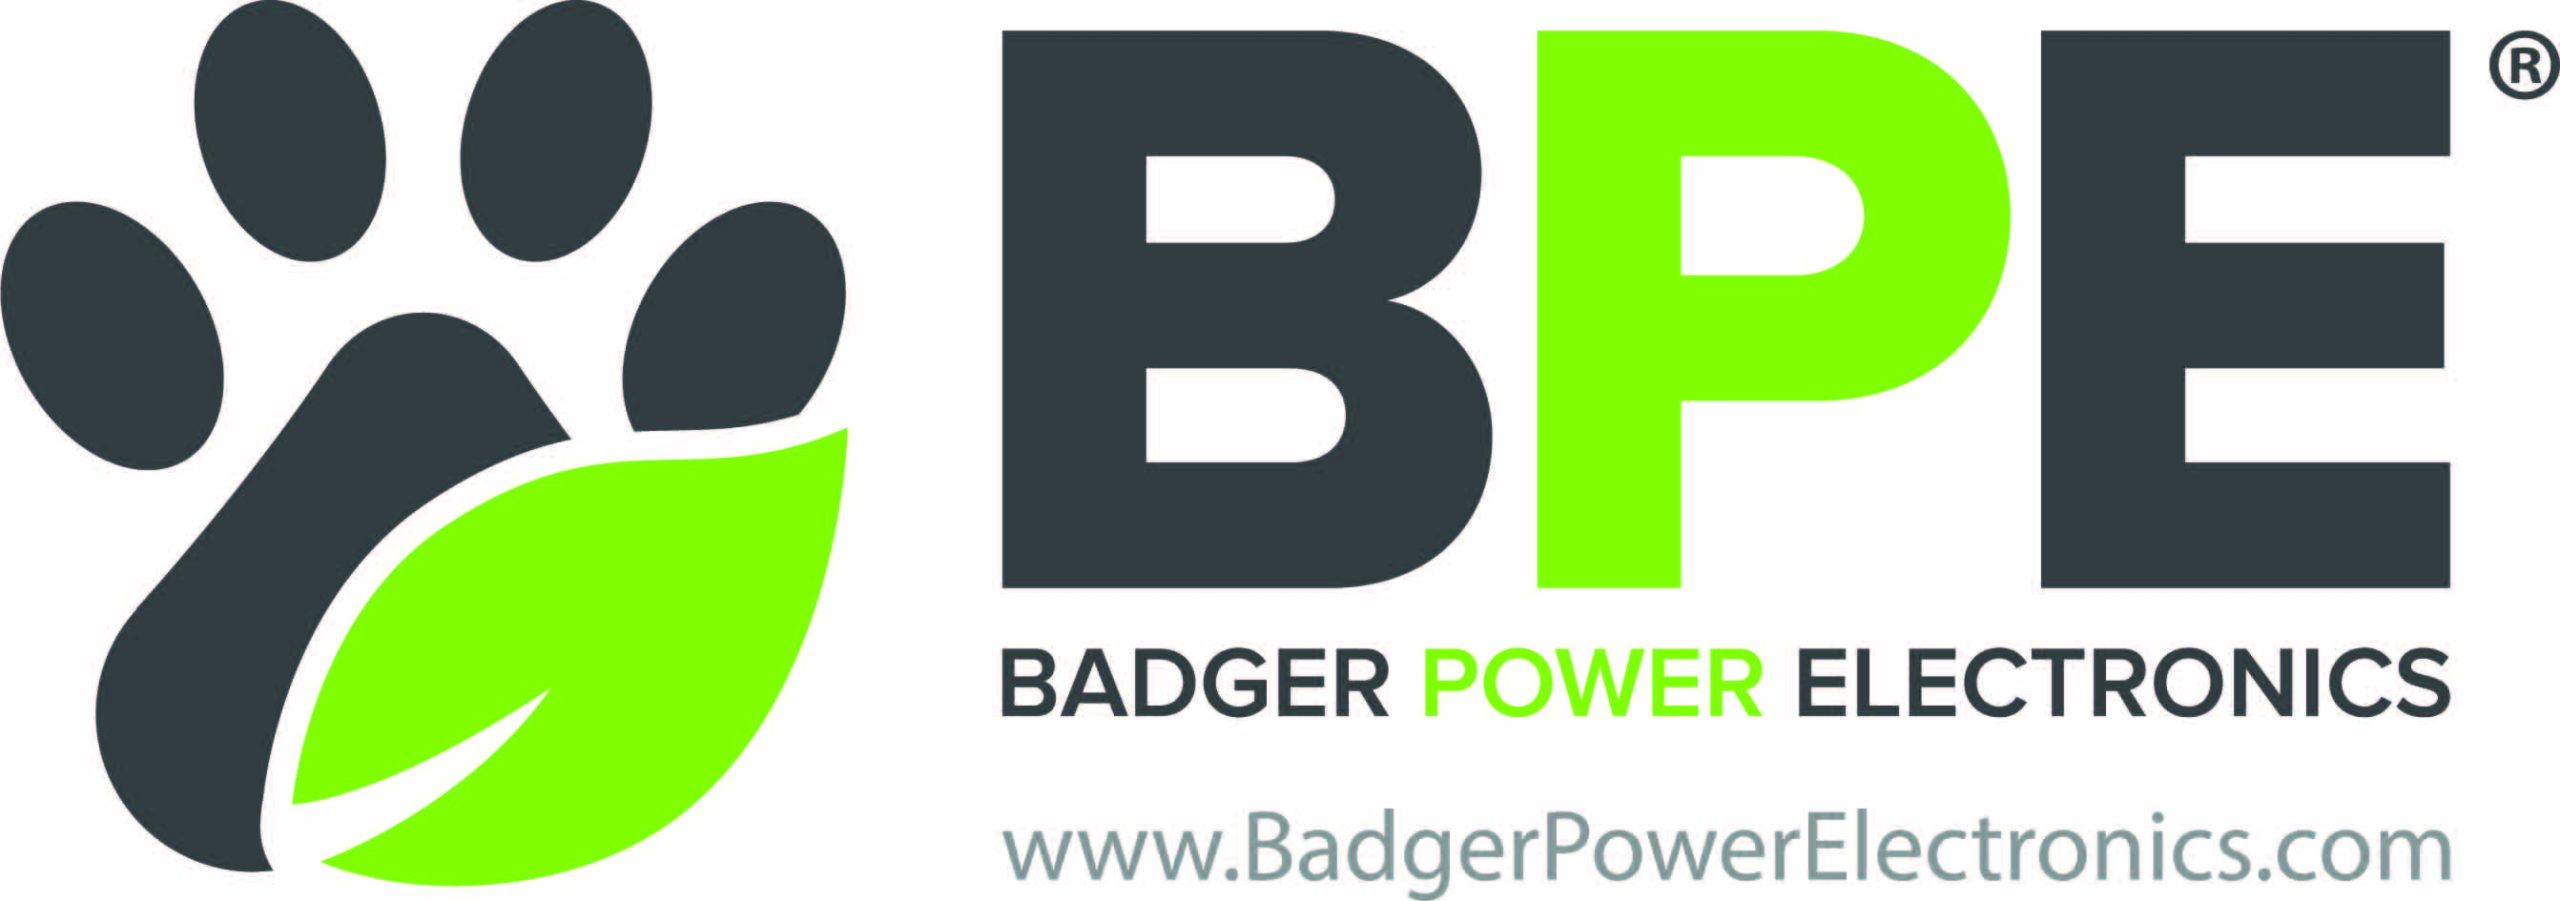 EcoBadger-Logo-Final-URL-R-1 (1)